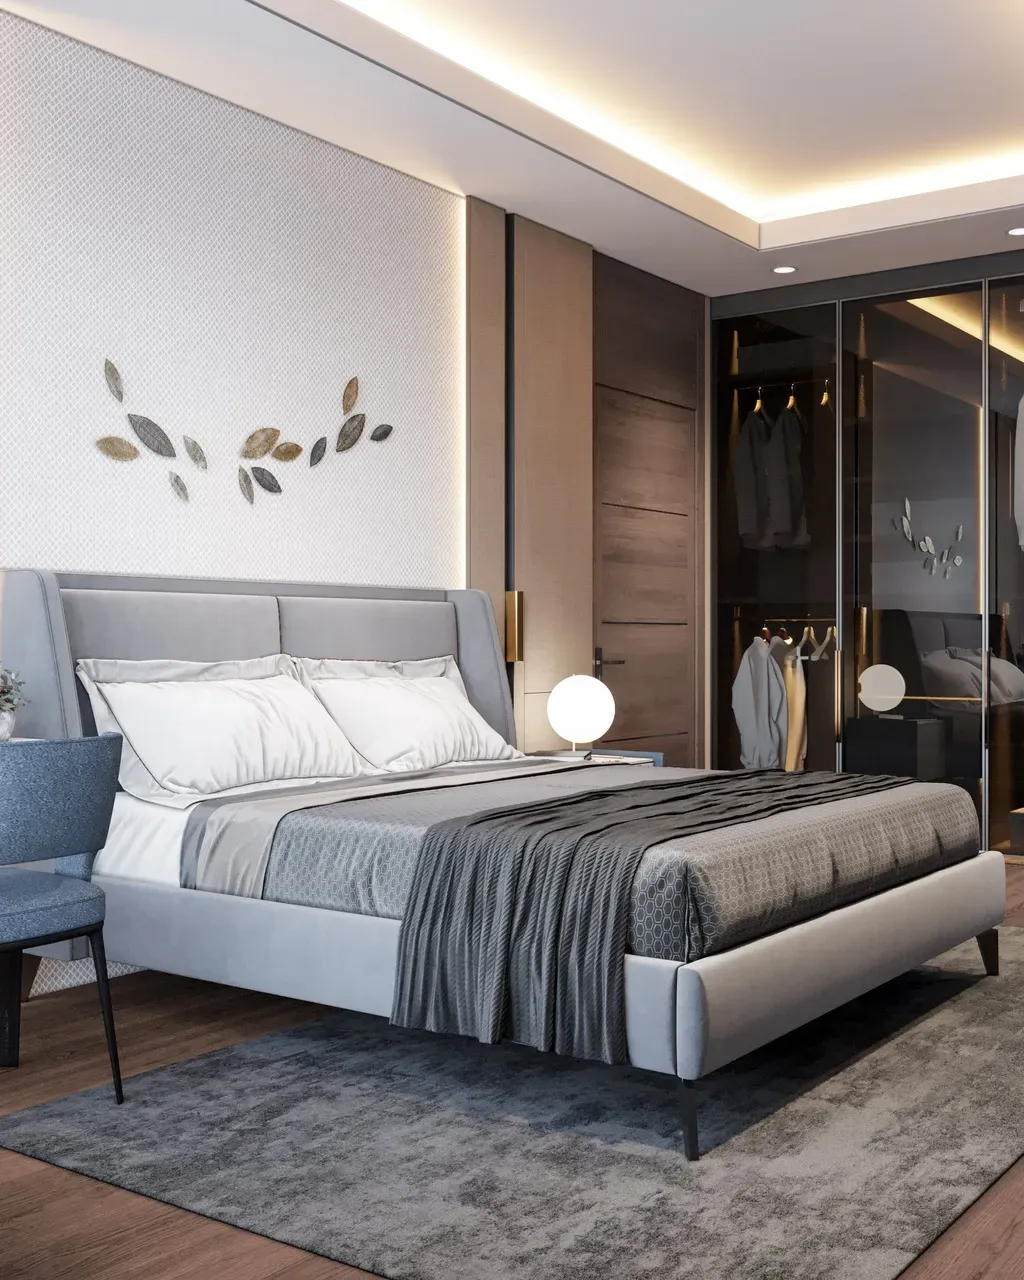 Phòng ngủ - Concept căn hộ - Phong cách Neo Classic & Minimalism số 2  | Space T